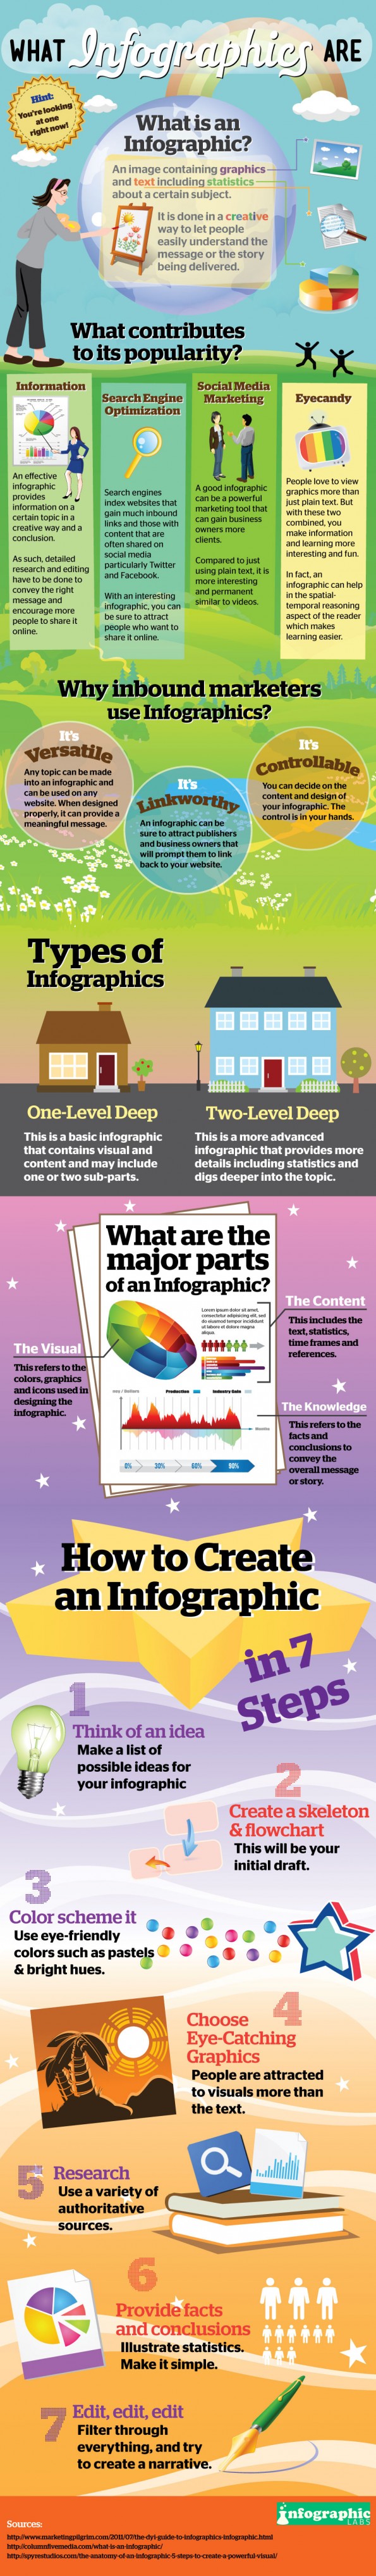 hoe maak je een goede infographic